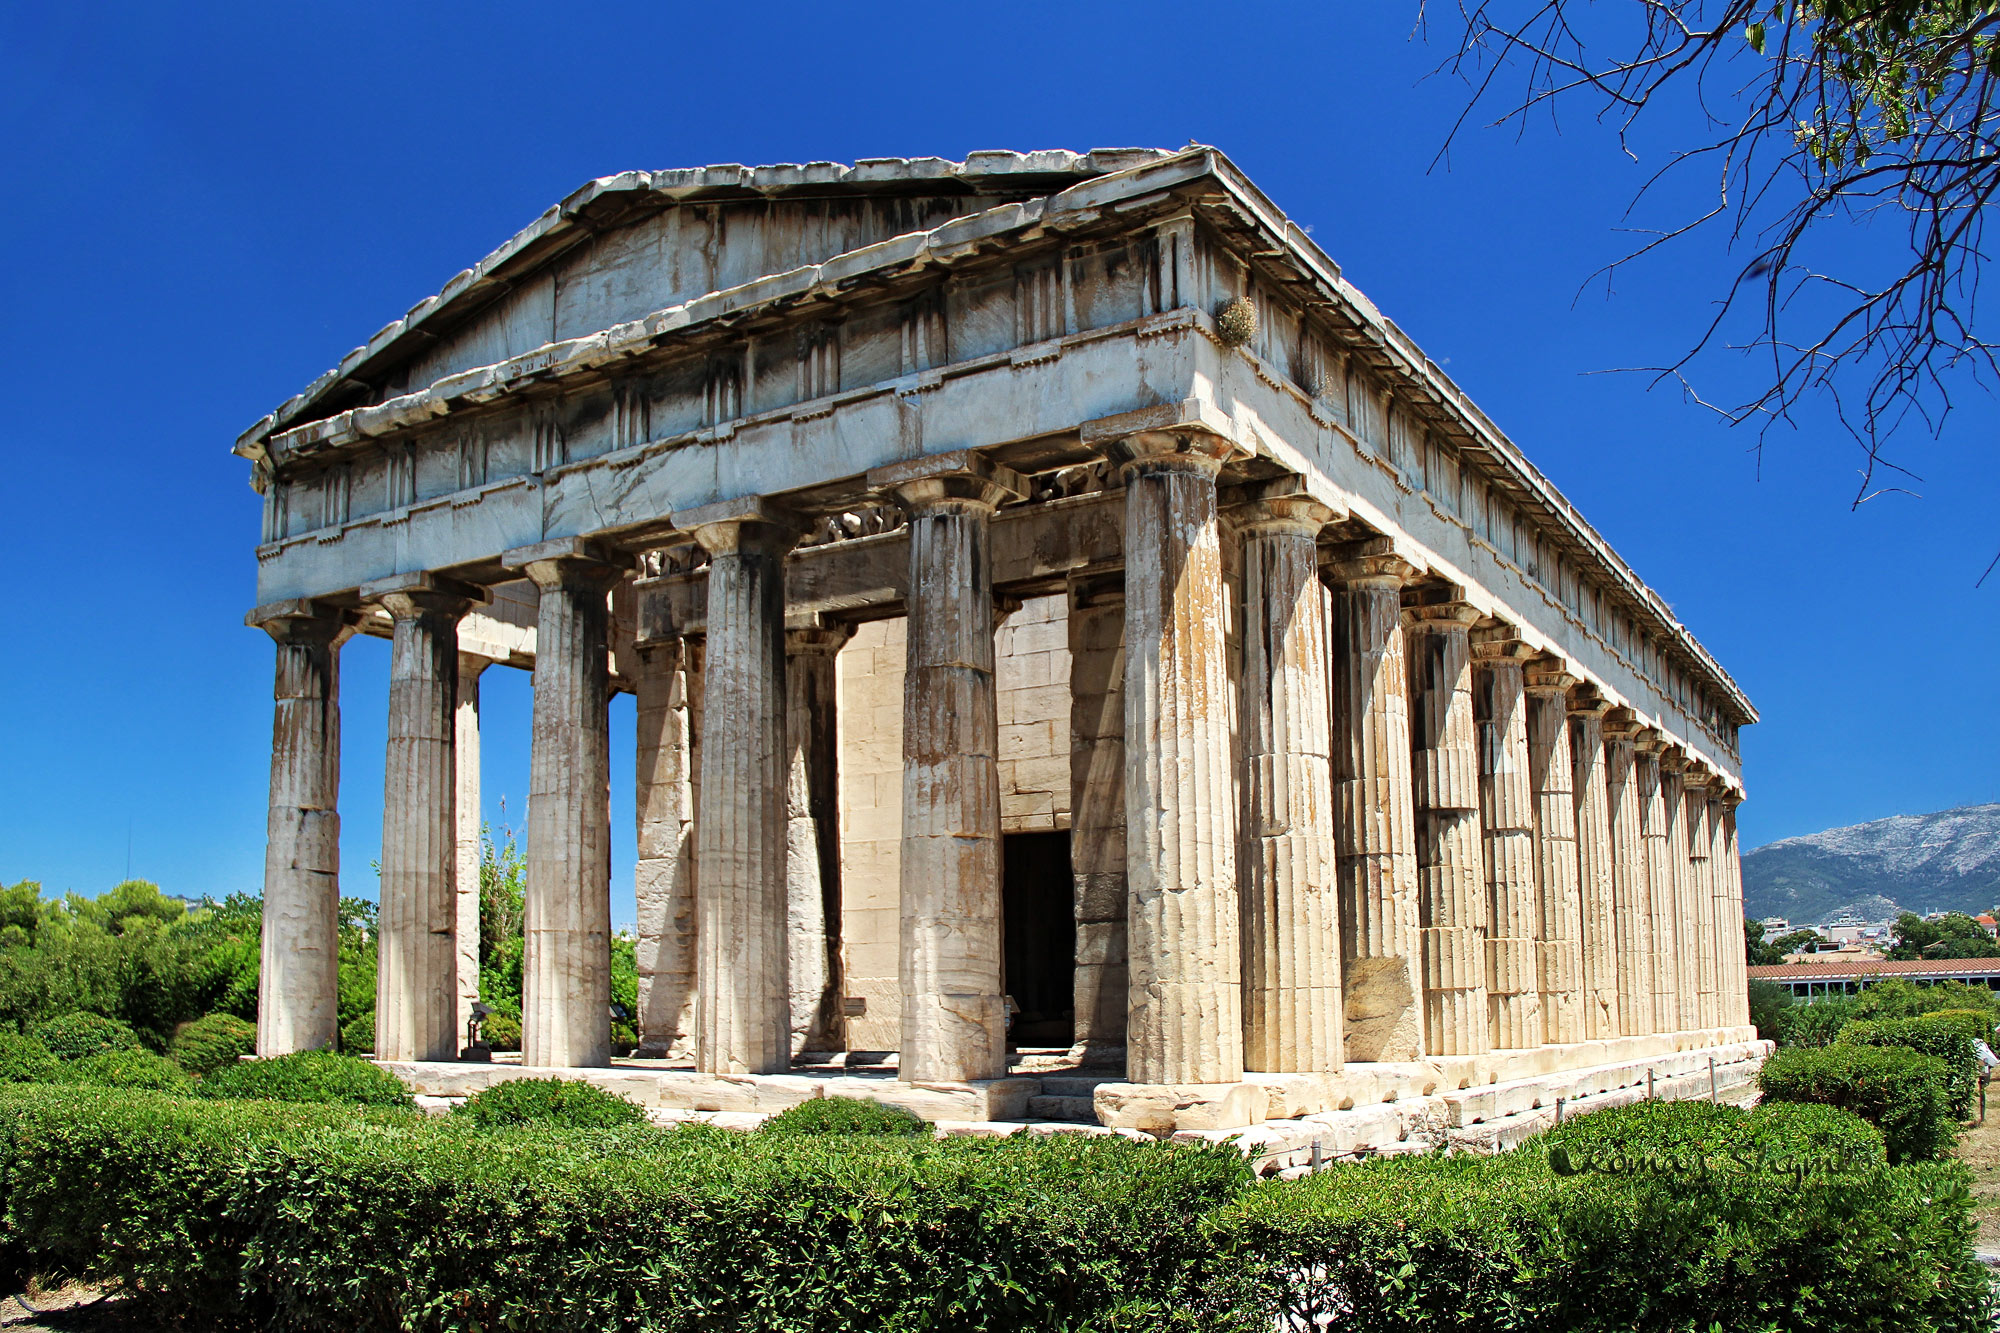 Temple of Hephaestus - beautiful religious site